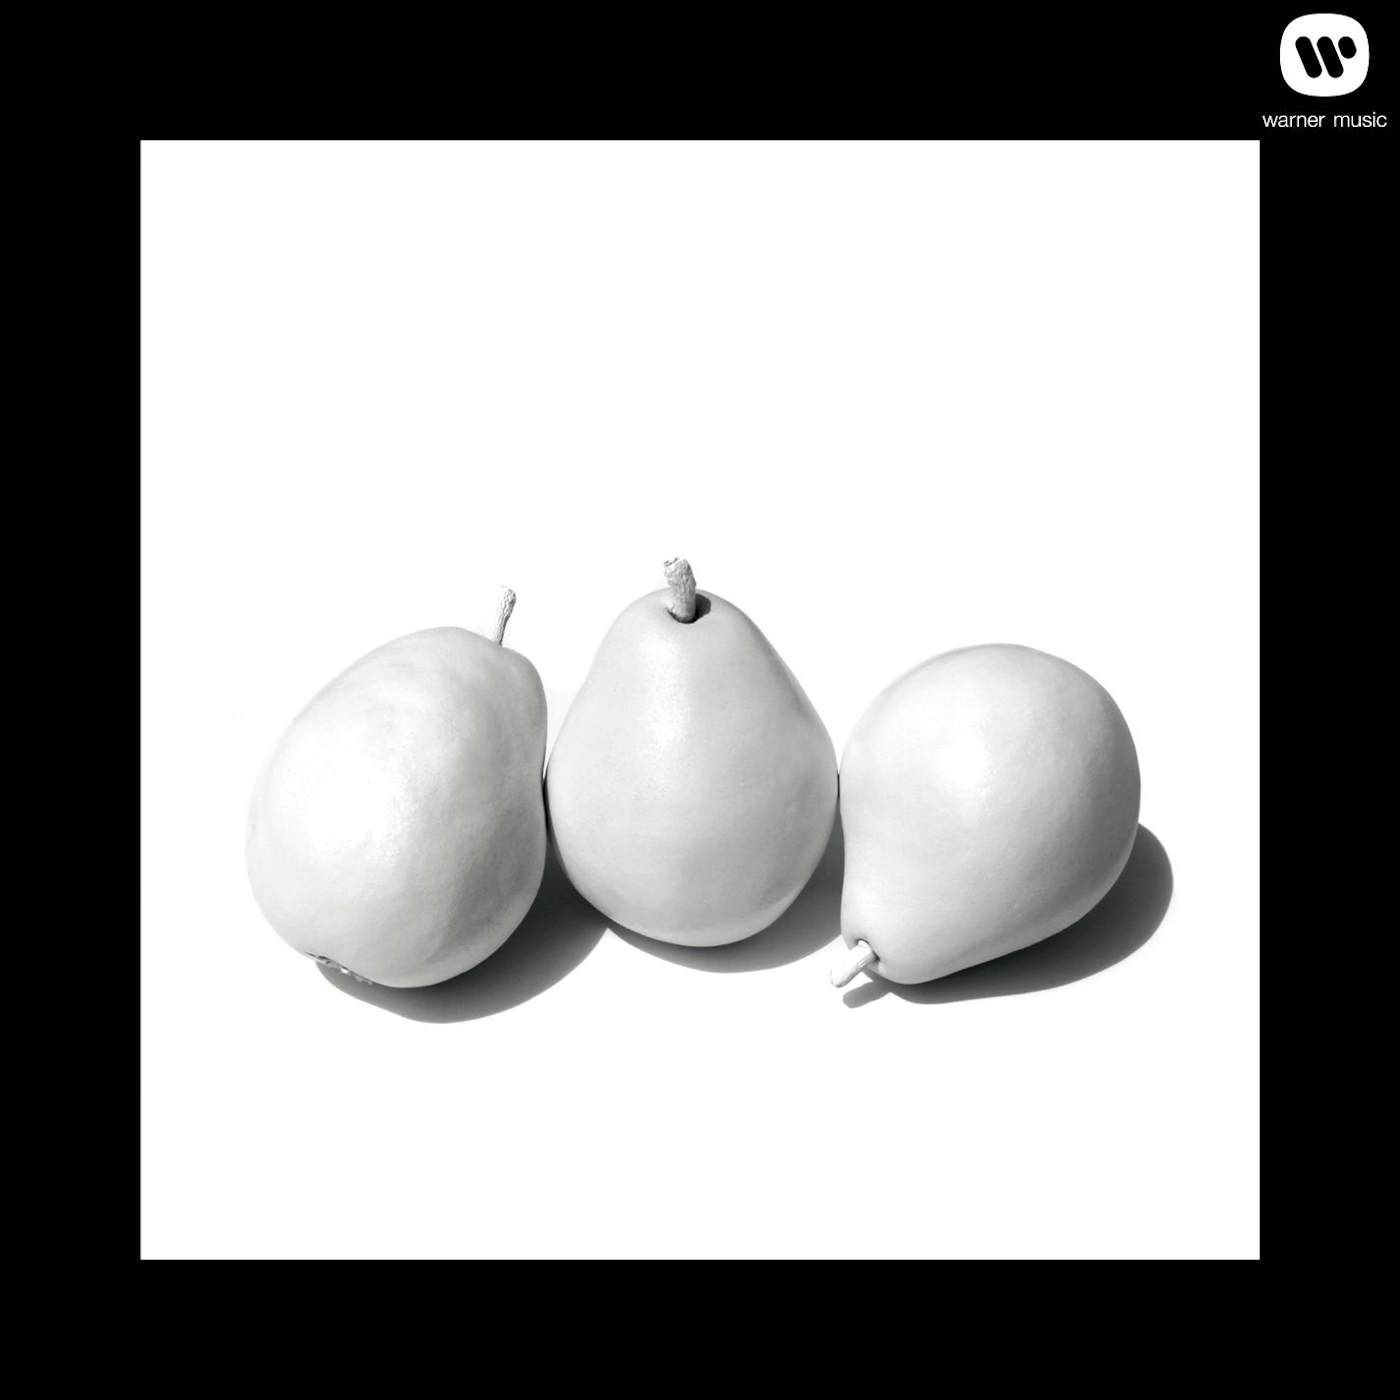 Dwight Yoakam 3 Pears Digital Album